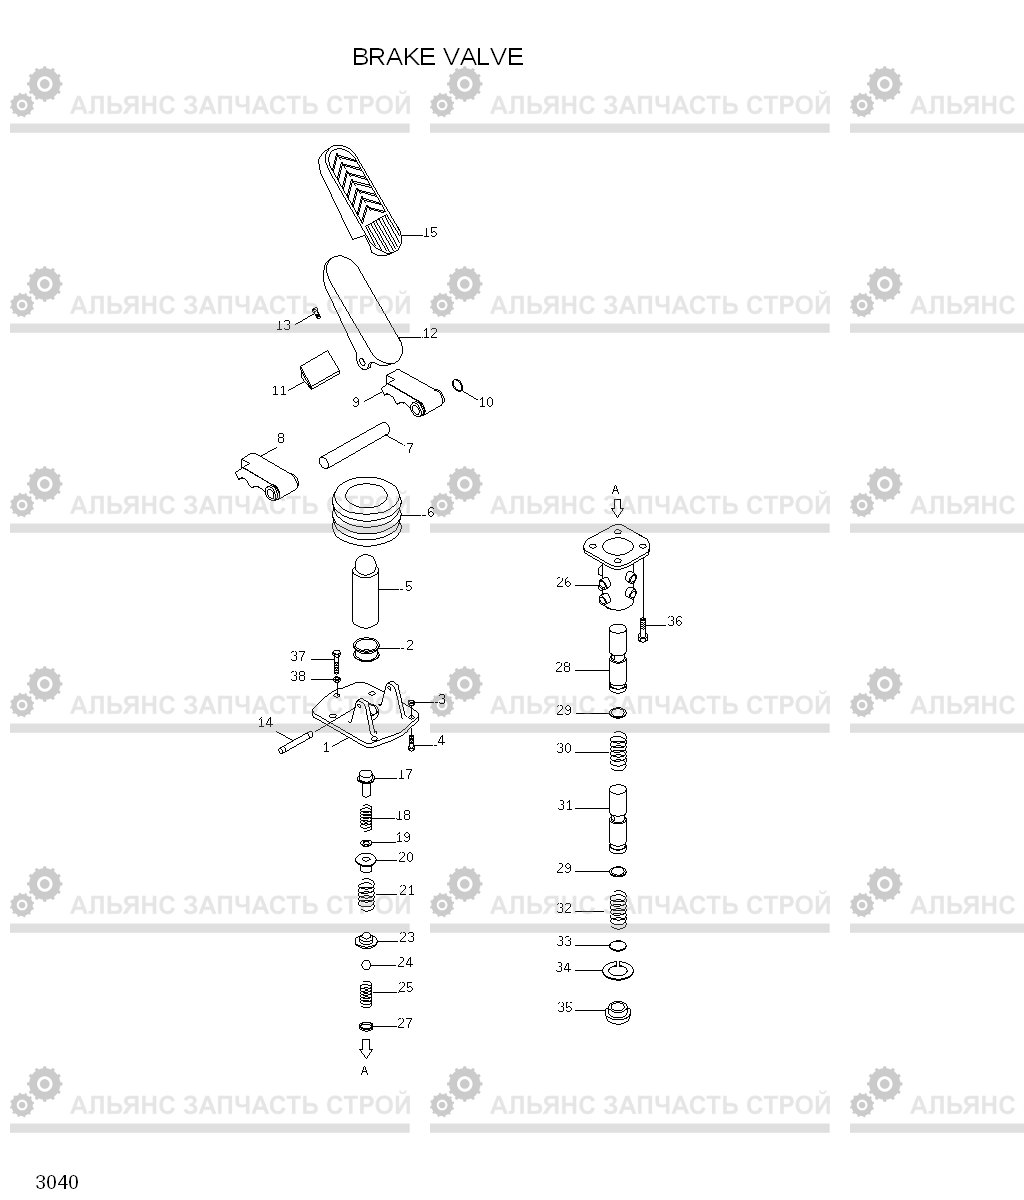 3040 BRAKE VALVE HL760(#1001-#1301), Hyundai